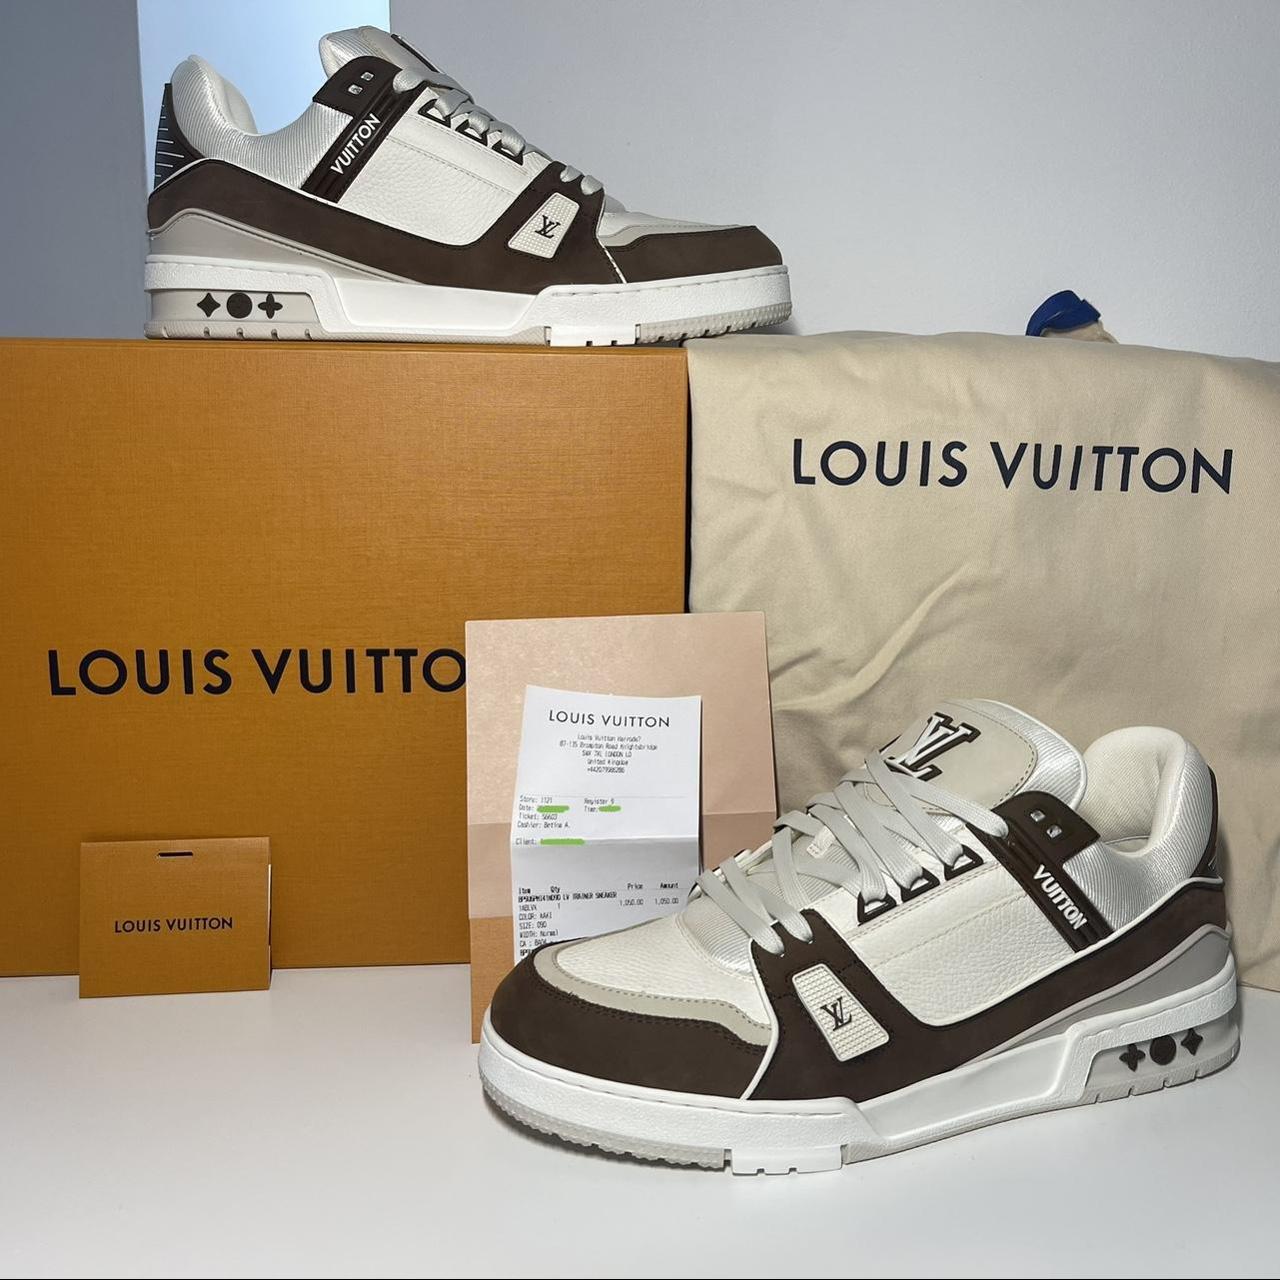 Authentic Louis Vuitton croc style trainer Size 10 - Depop